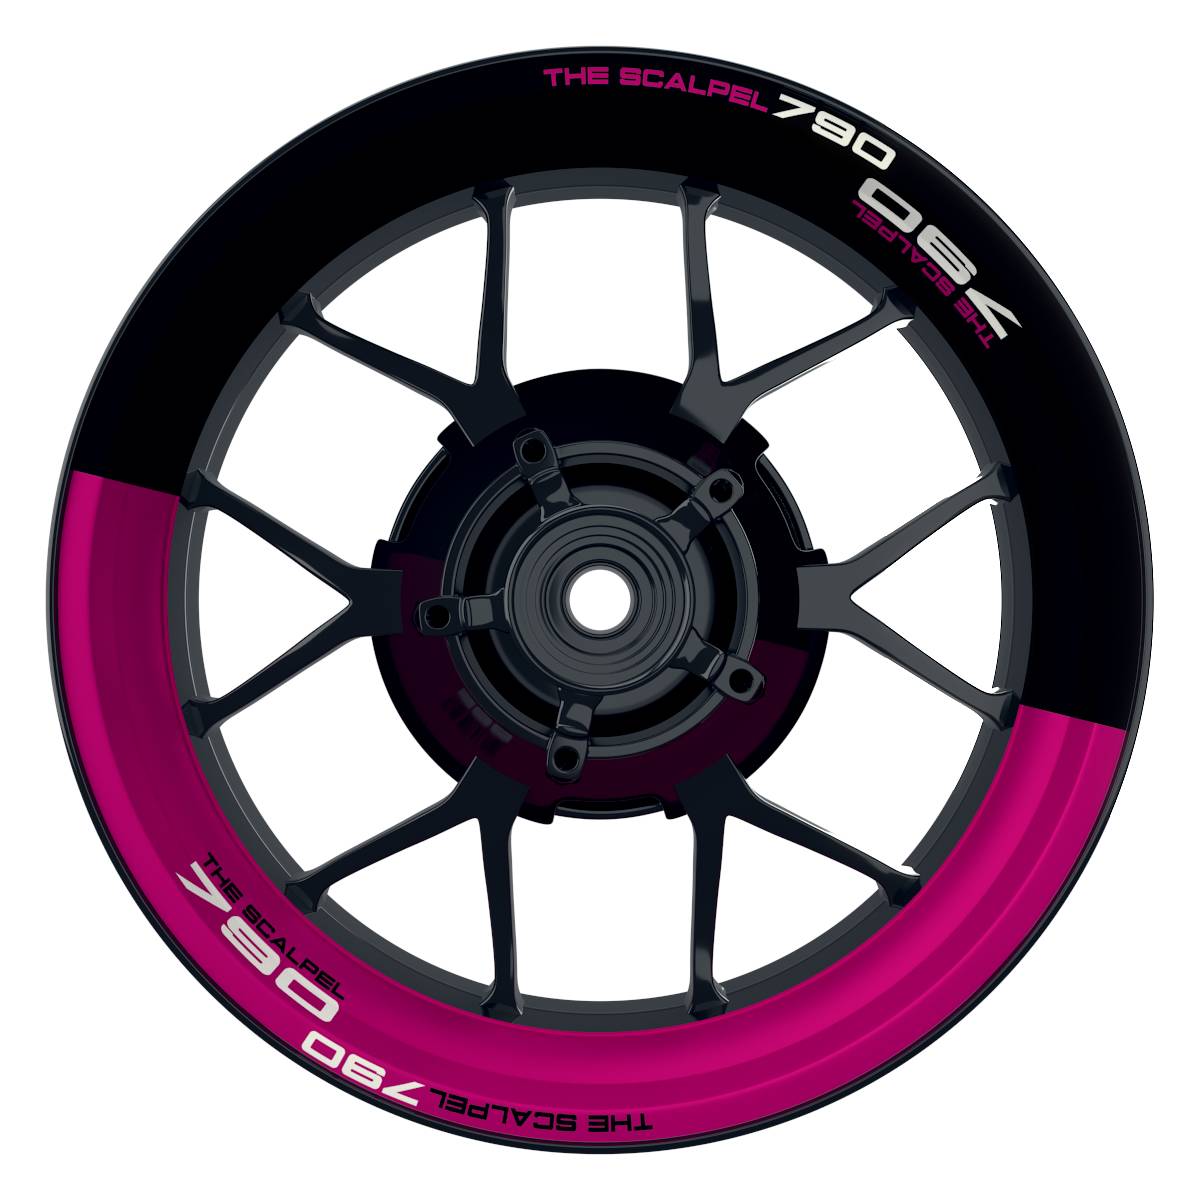 THE SCALPEL 790 halb halb schwarz pink Wheelsticker Felgenaufkleber